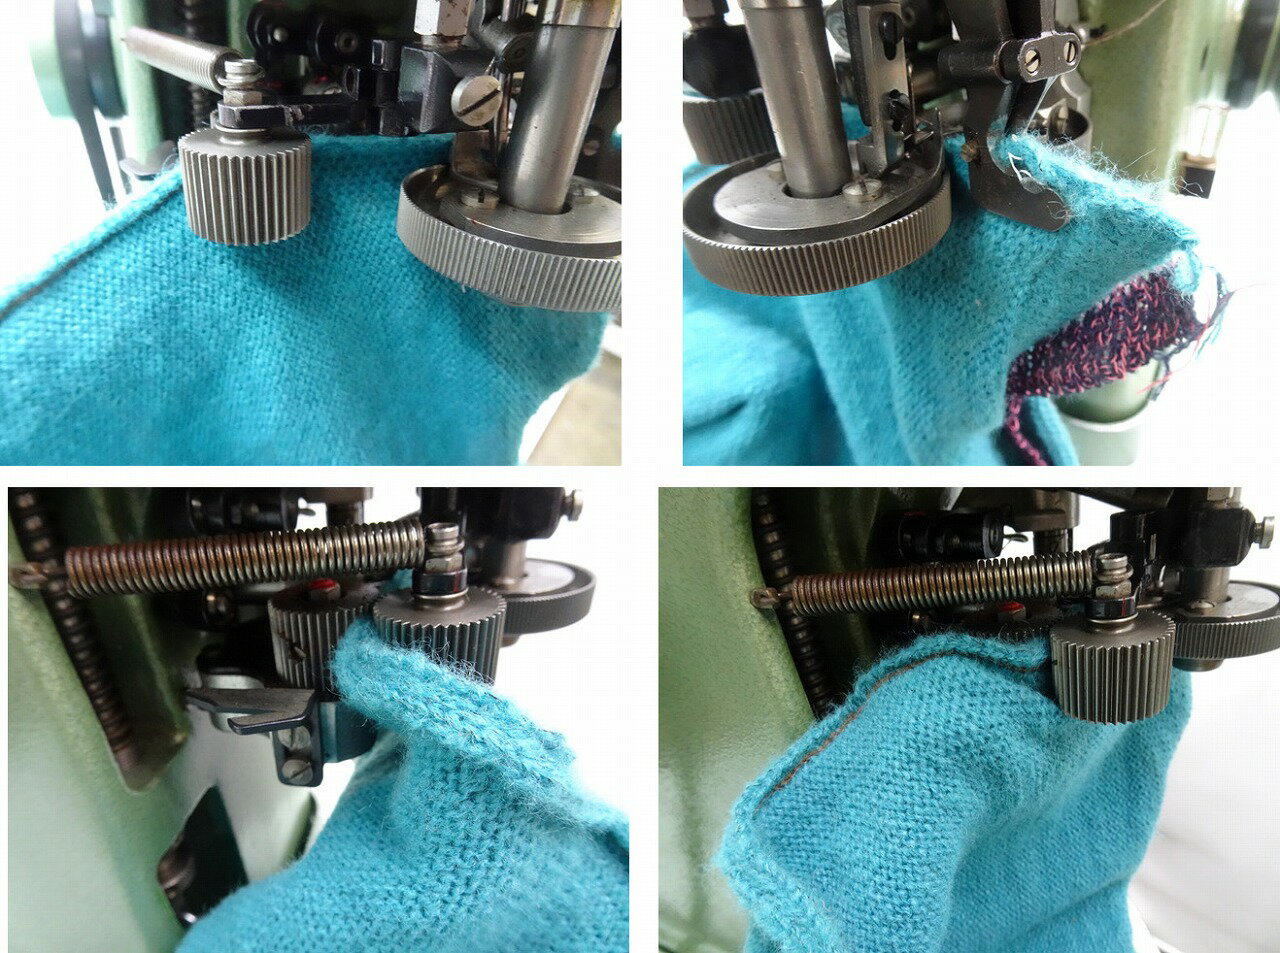 日本製 置き古しの新古品　頭部のみ 送料別。ヨネズHY-10W型 1本針1本糸単環縫いカップシーマーミシン テーブル・脚・モーター別お見積りとなります